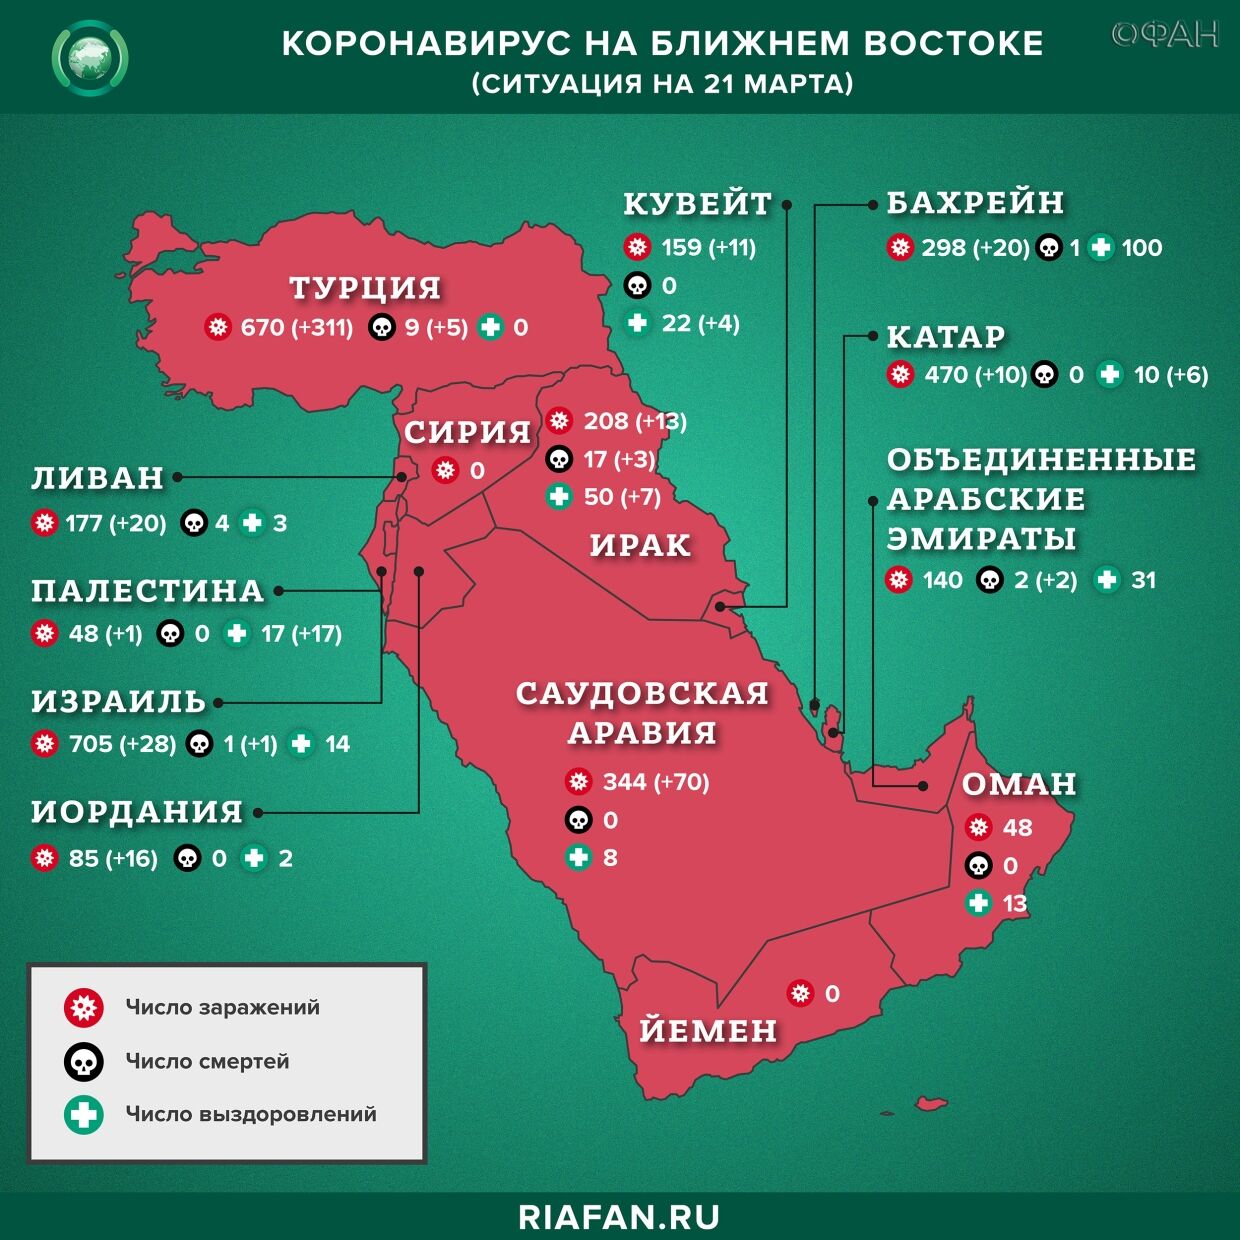 Коронавирус в арабском мире: суточная сводка по состоянию на 10.00 21 Mars 2020 de l'année